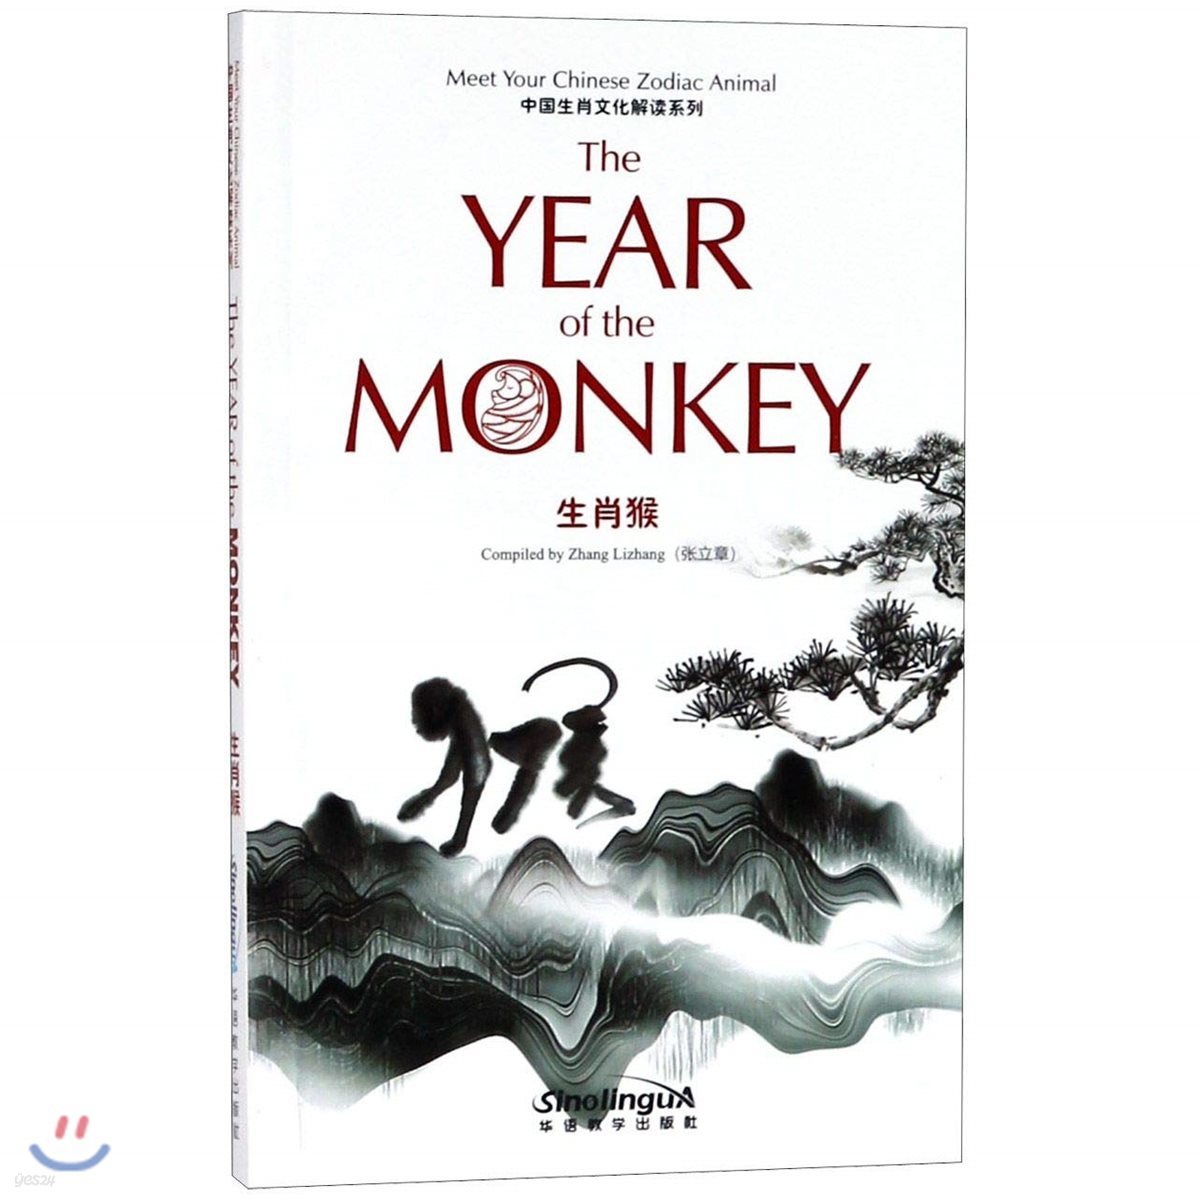 中?生肖文化解?系列 生肖? 중국생초문화해독계열 생초후 Meet Your Chinese Zodiac Animal The Year of the Monkey